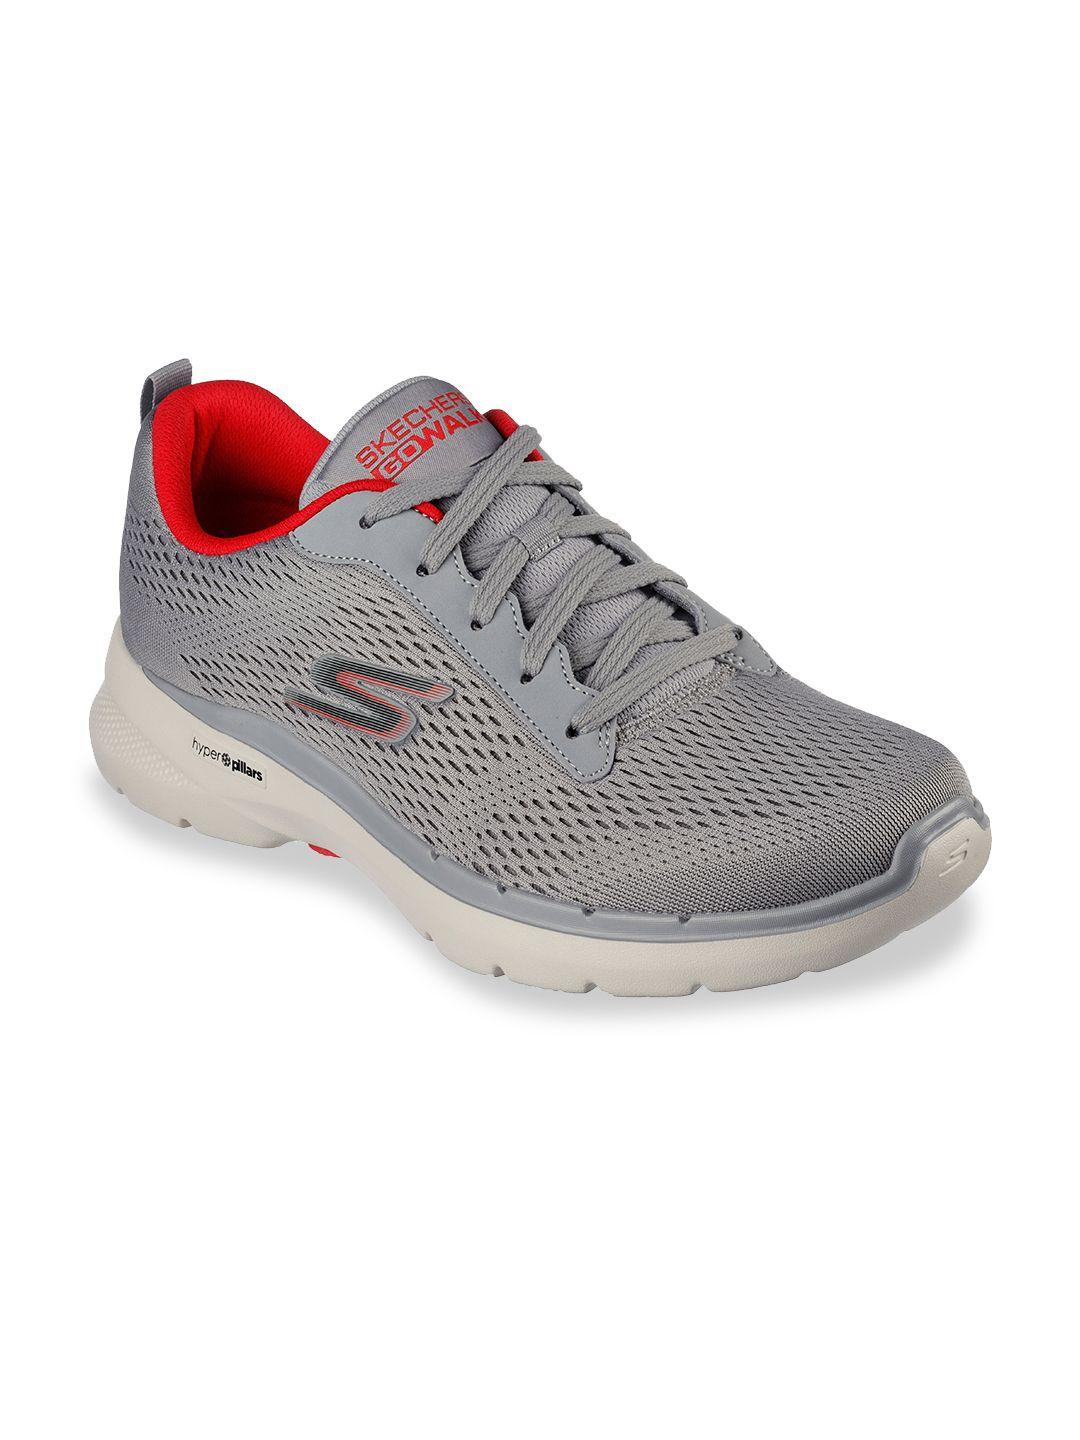 Skechers Men GO WALK 6 - AVALO 2.0 Walking Sports Shoes